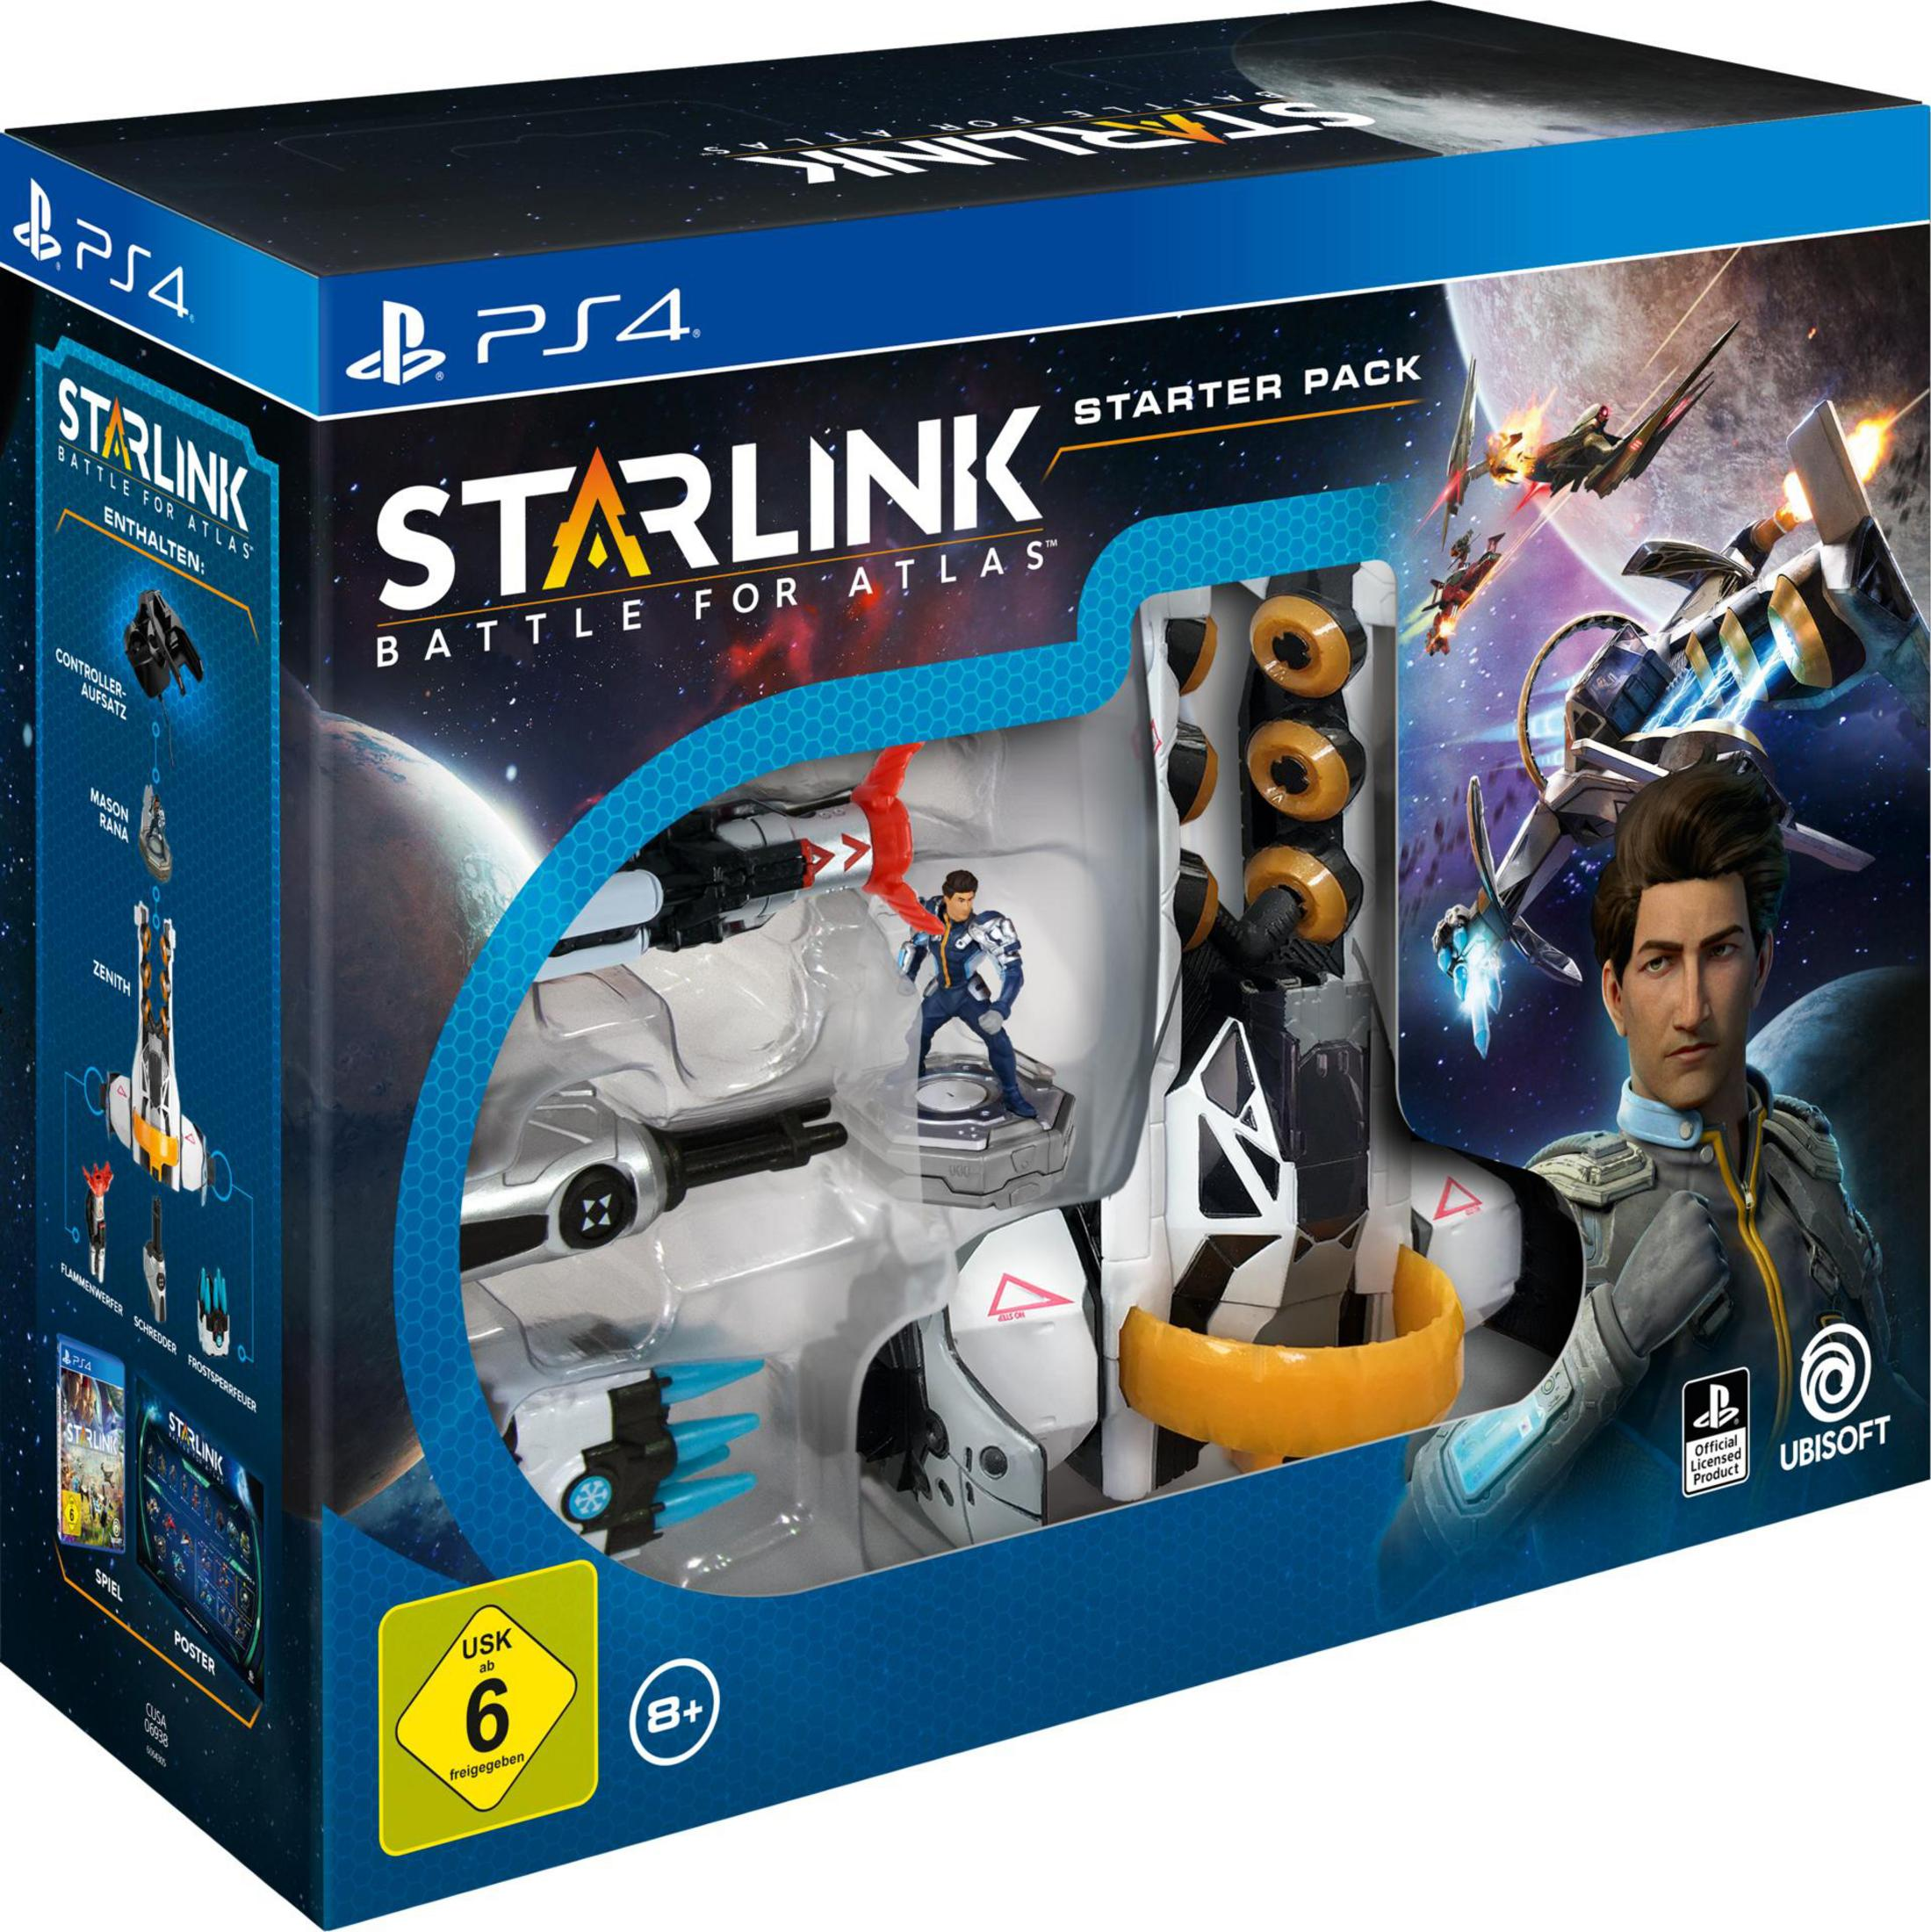 Starlink: Battle for Atlas Pack - Starter 4] PS4 [PlayStation 